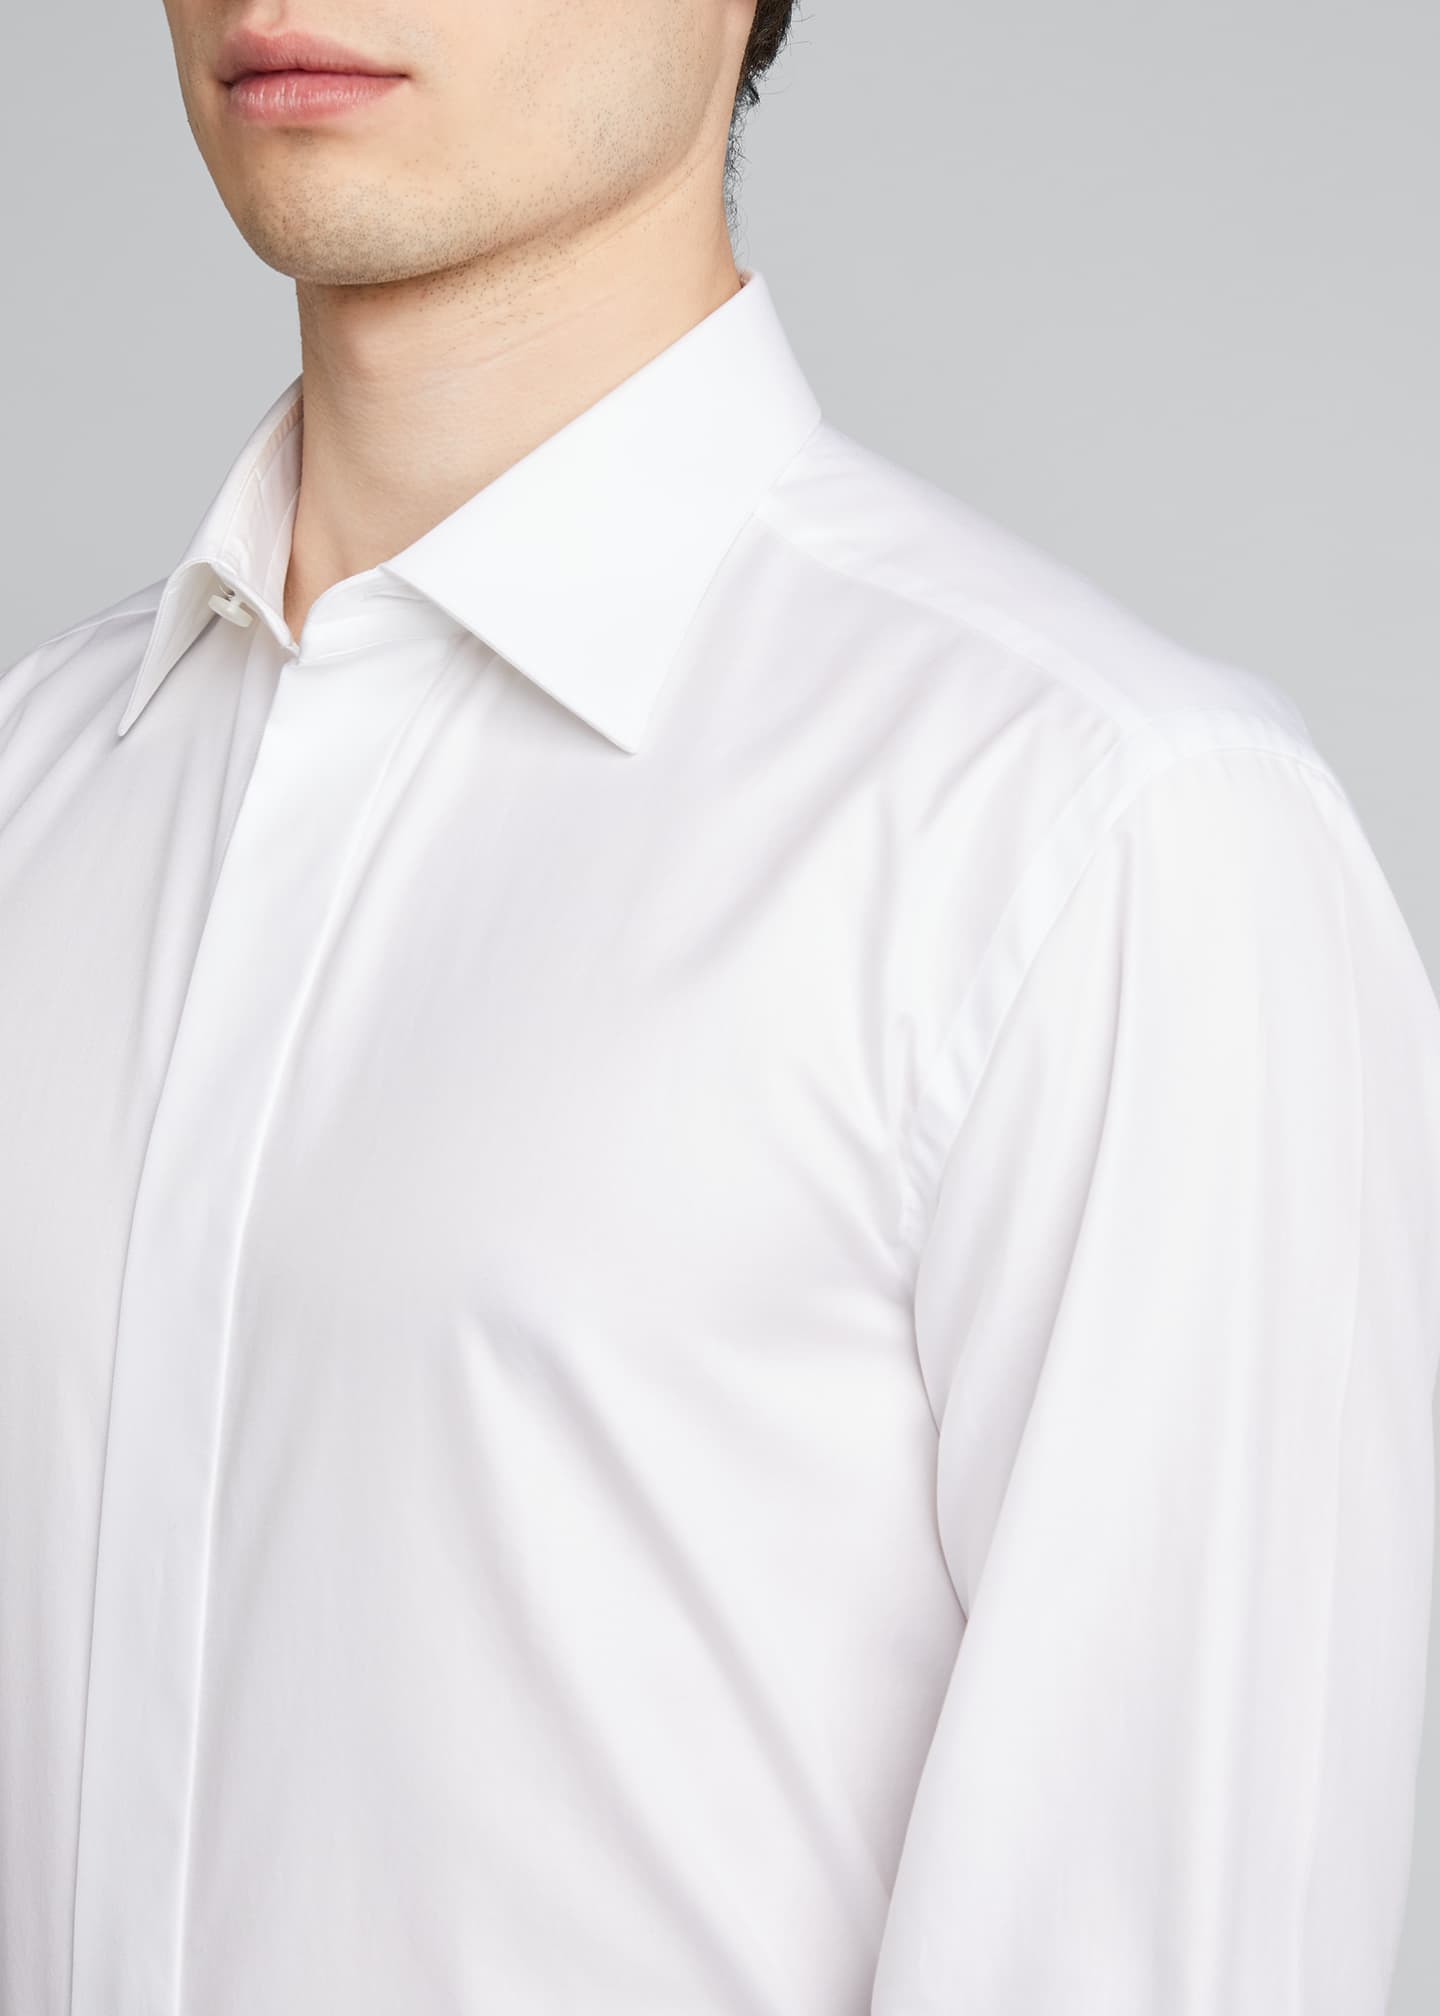 Brioni x Brad Pitt Men's Hidden-Placket Tuxedo Shirt - Bergdorf Goodman